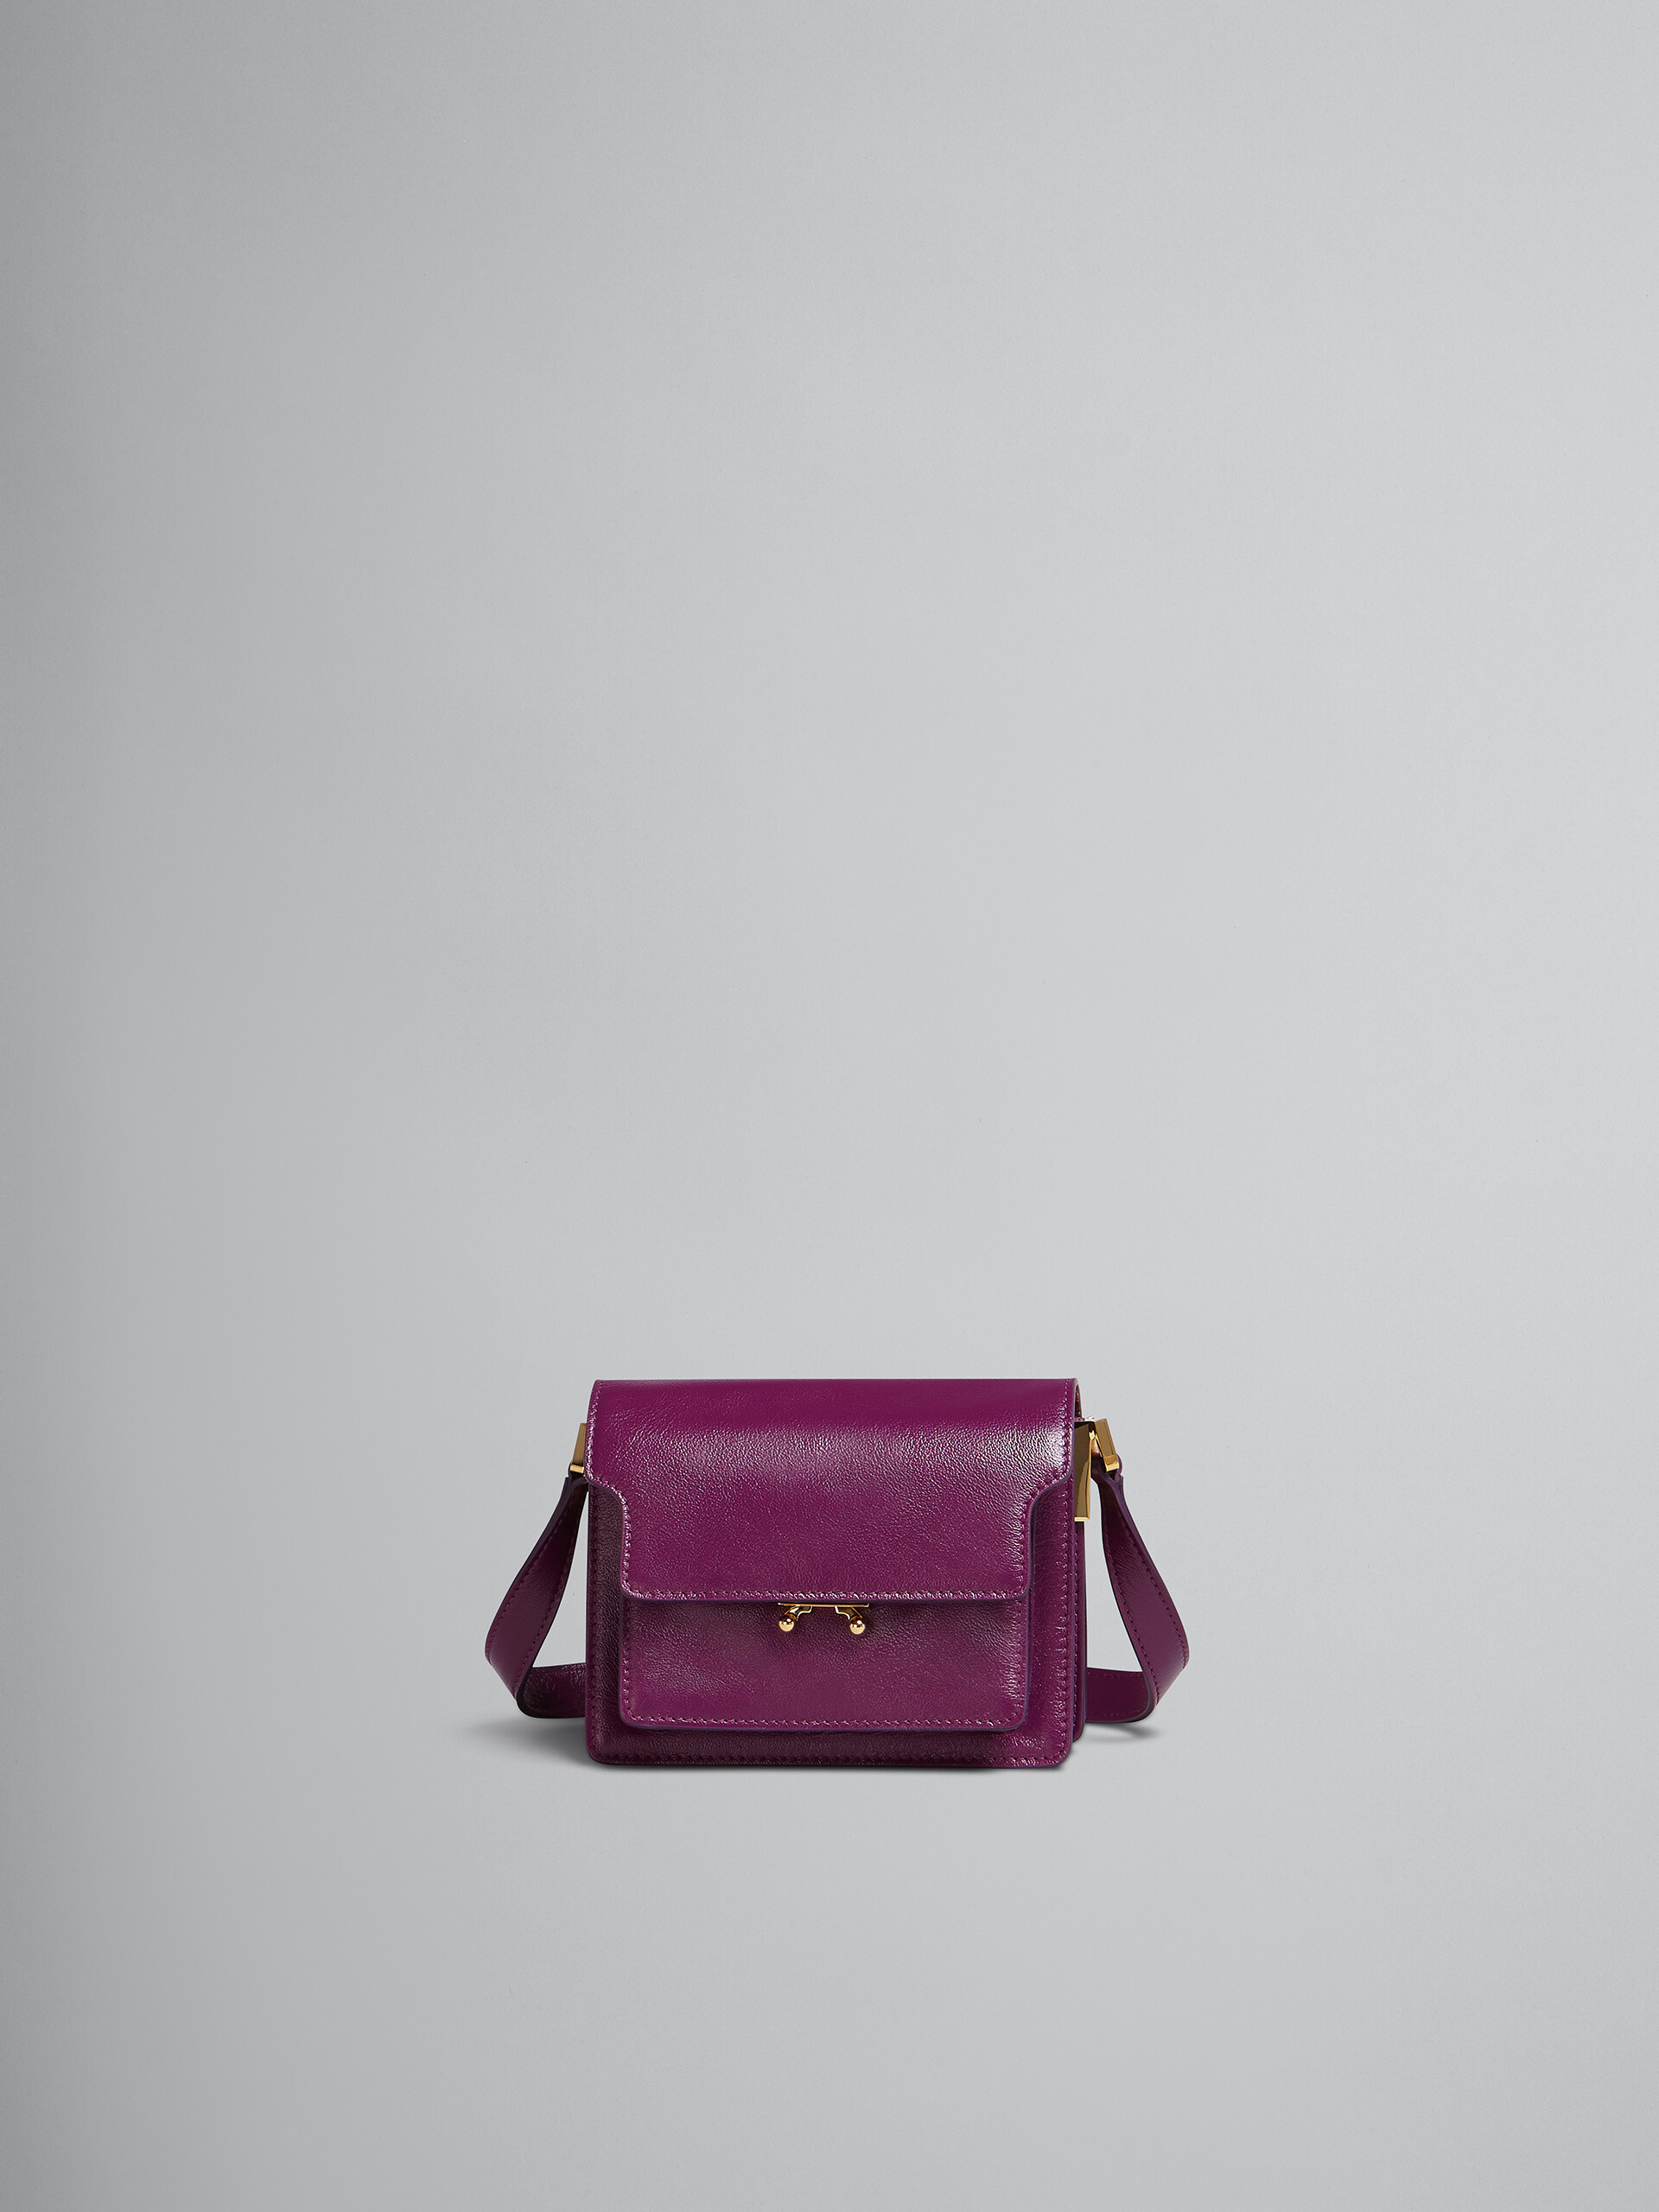 TRUNK SOFT mini bag in purple leather - Shoulder Bag - Image 1